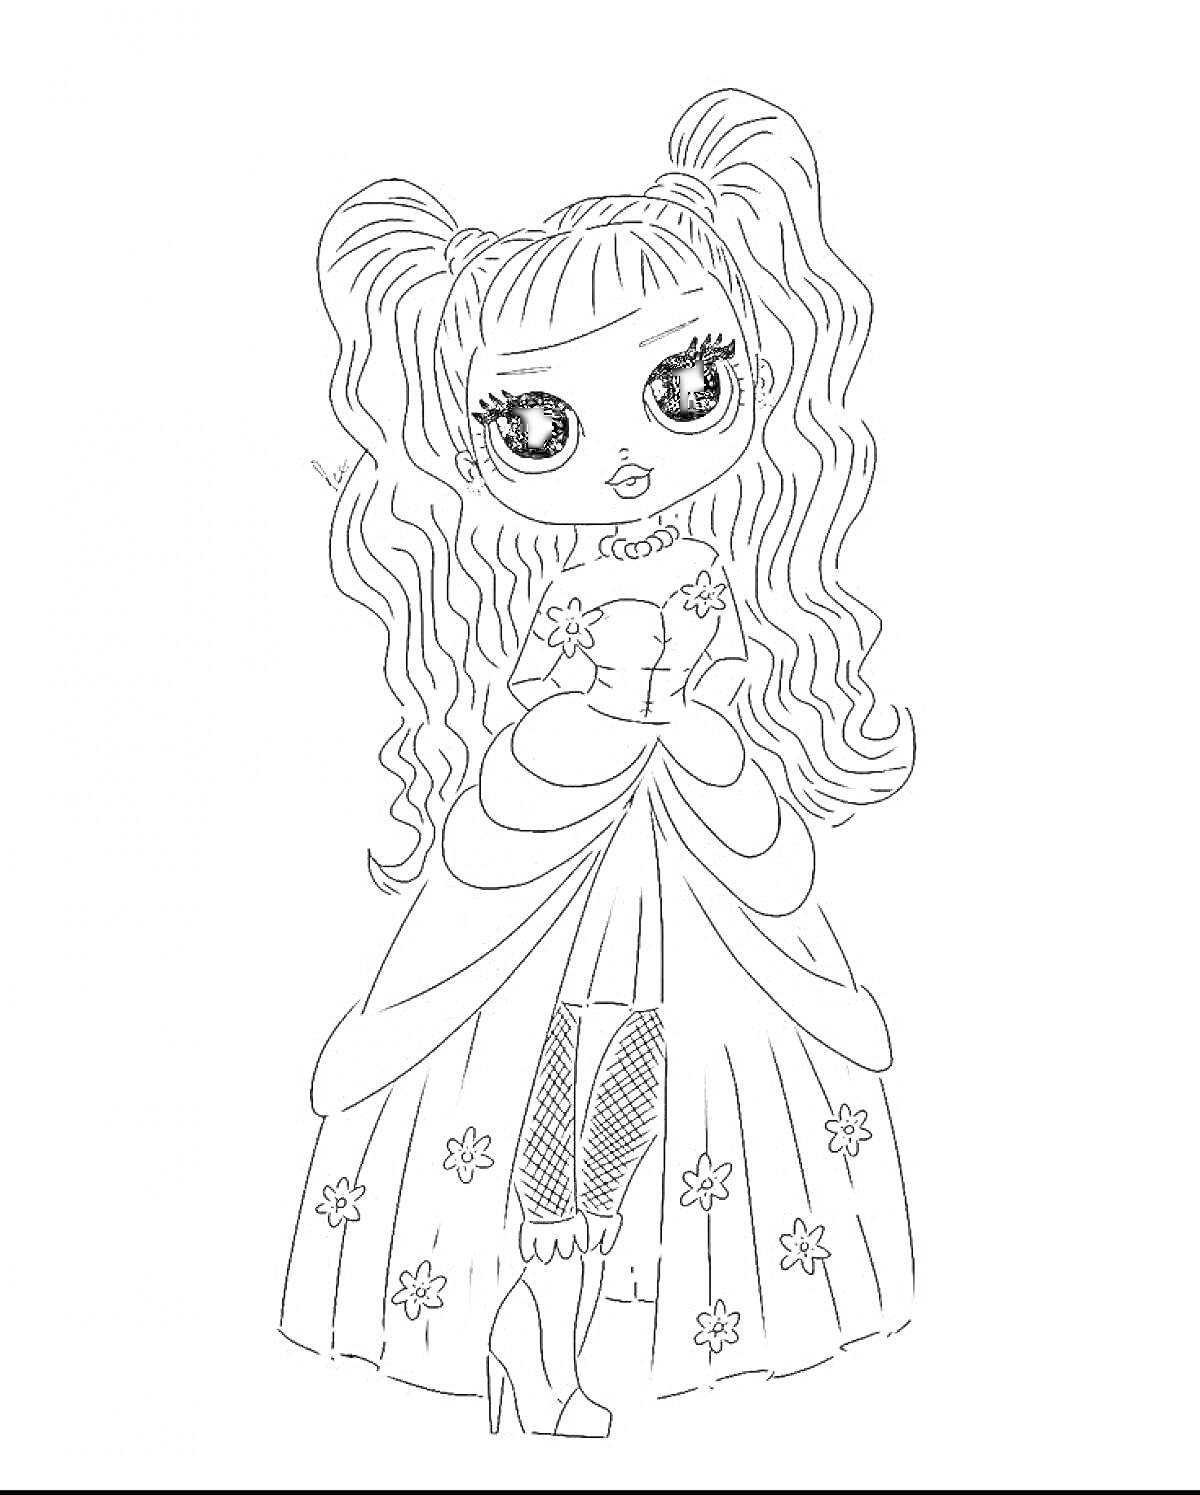 Раскраска персонаж L.O.L. OMG, девушка с длинными волнистыми волосами, в платье с цветочным узором, на высоких каблуках и в колготках в сеточку